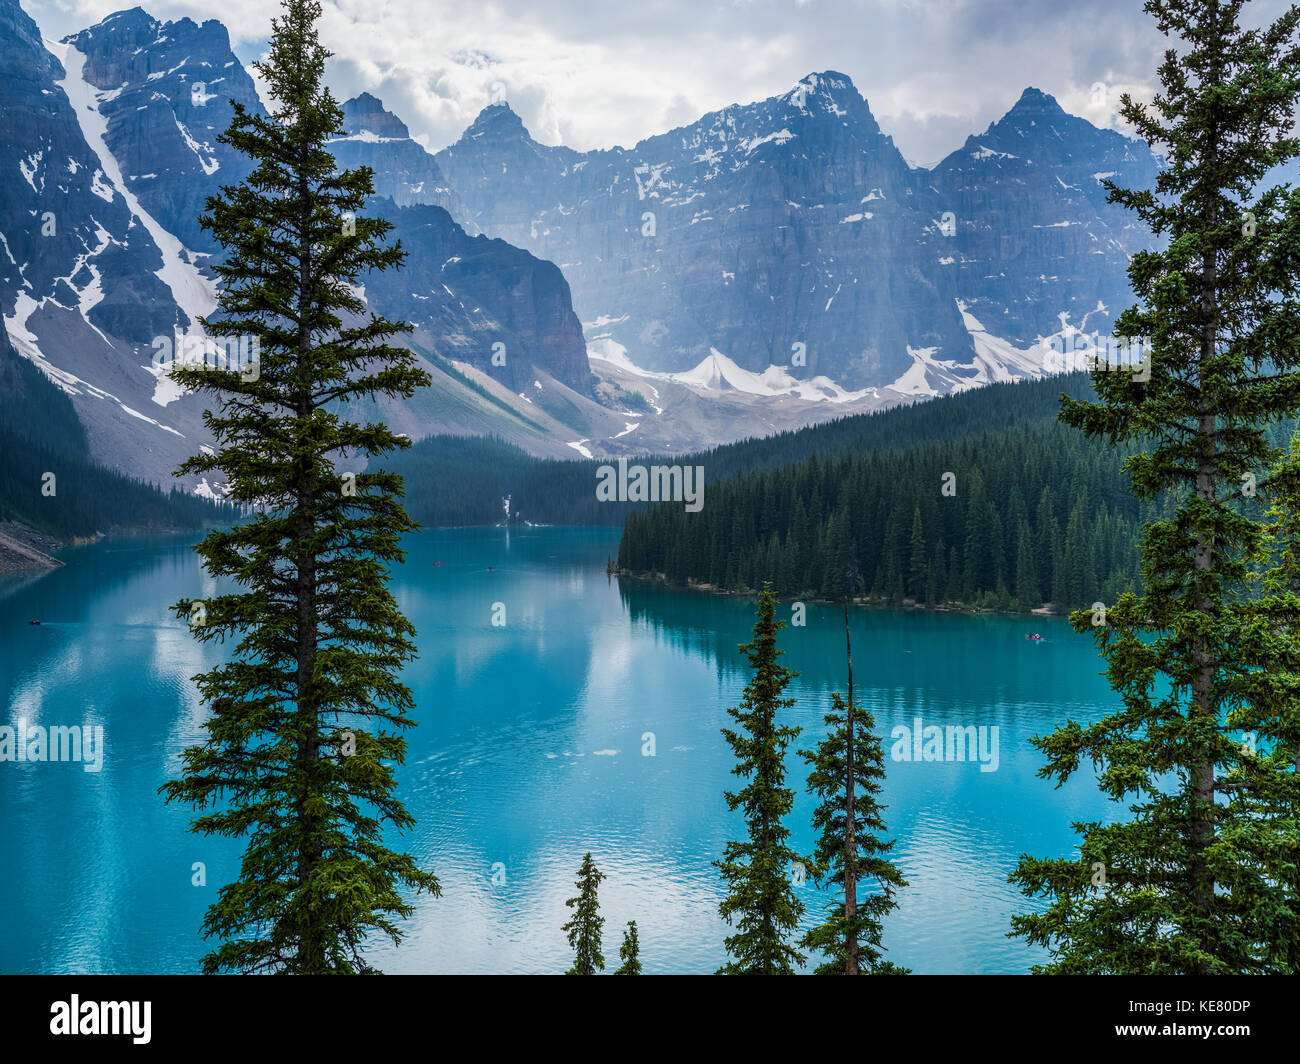 Vue imprenable sur les sommets des montagnes Rocheuses canadiennes et d'un turquoise paisible lac Moraine de forêts le long du littoral Banque D'Images